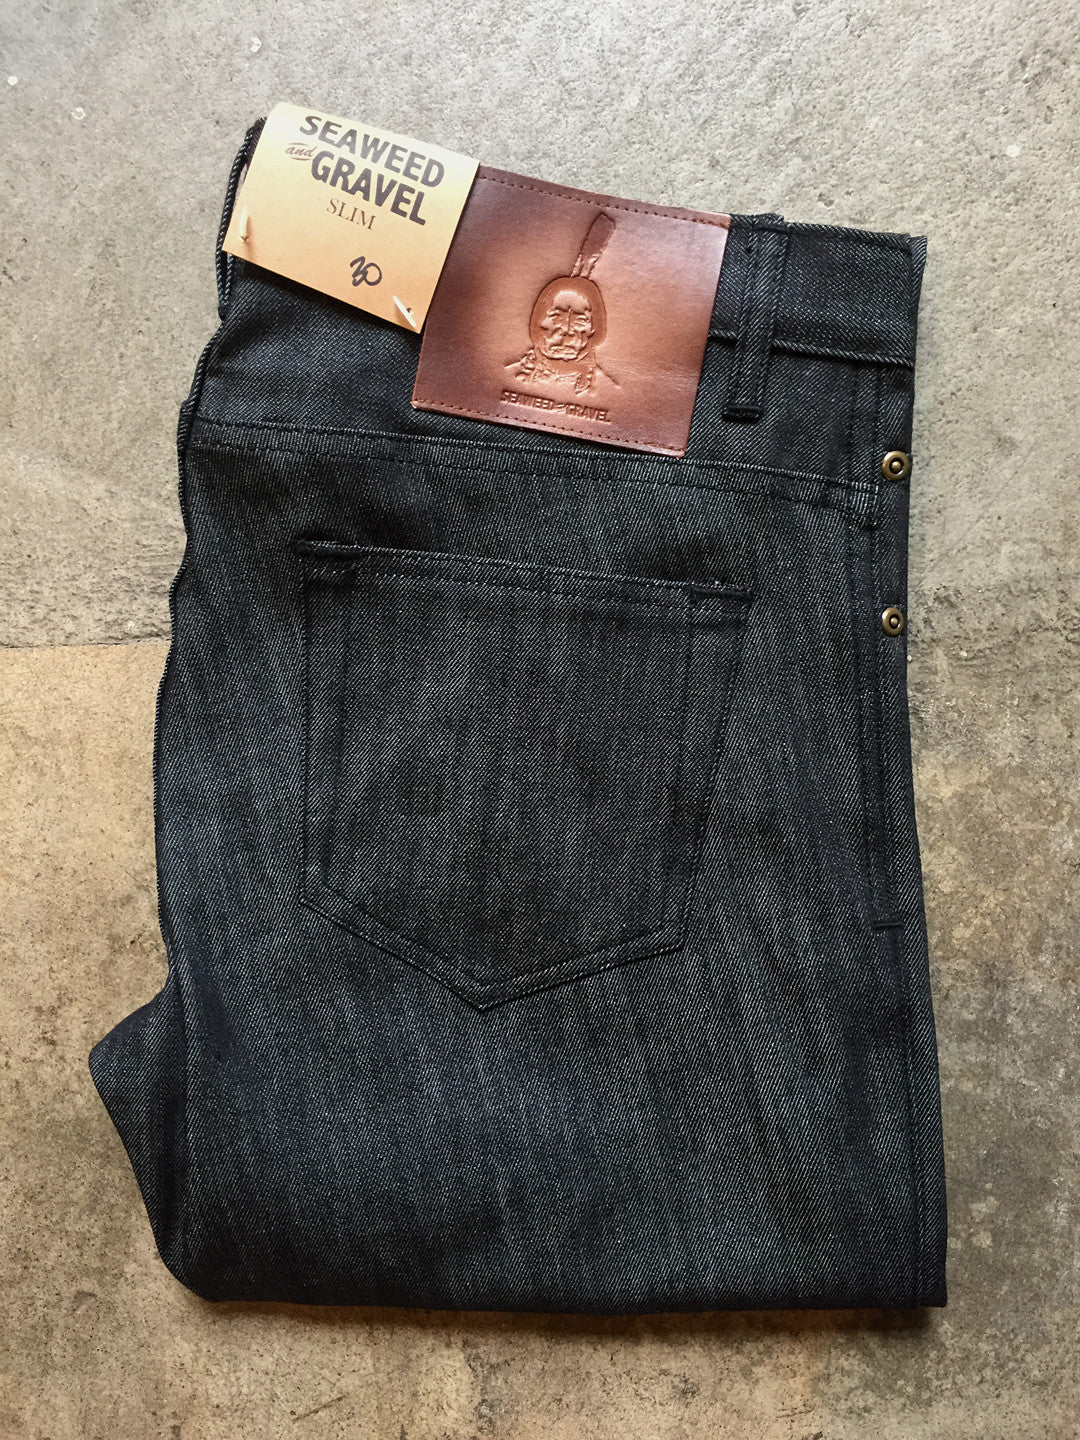 Denim S&G Mens Slim Jeans Black take 50% Off List Price